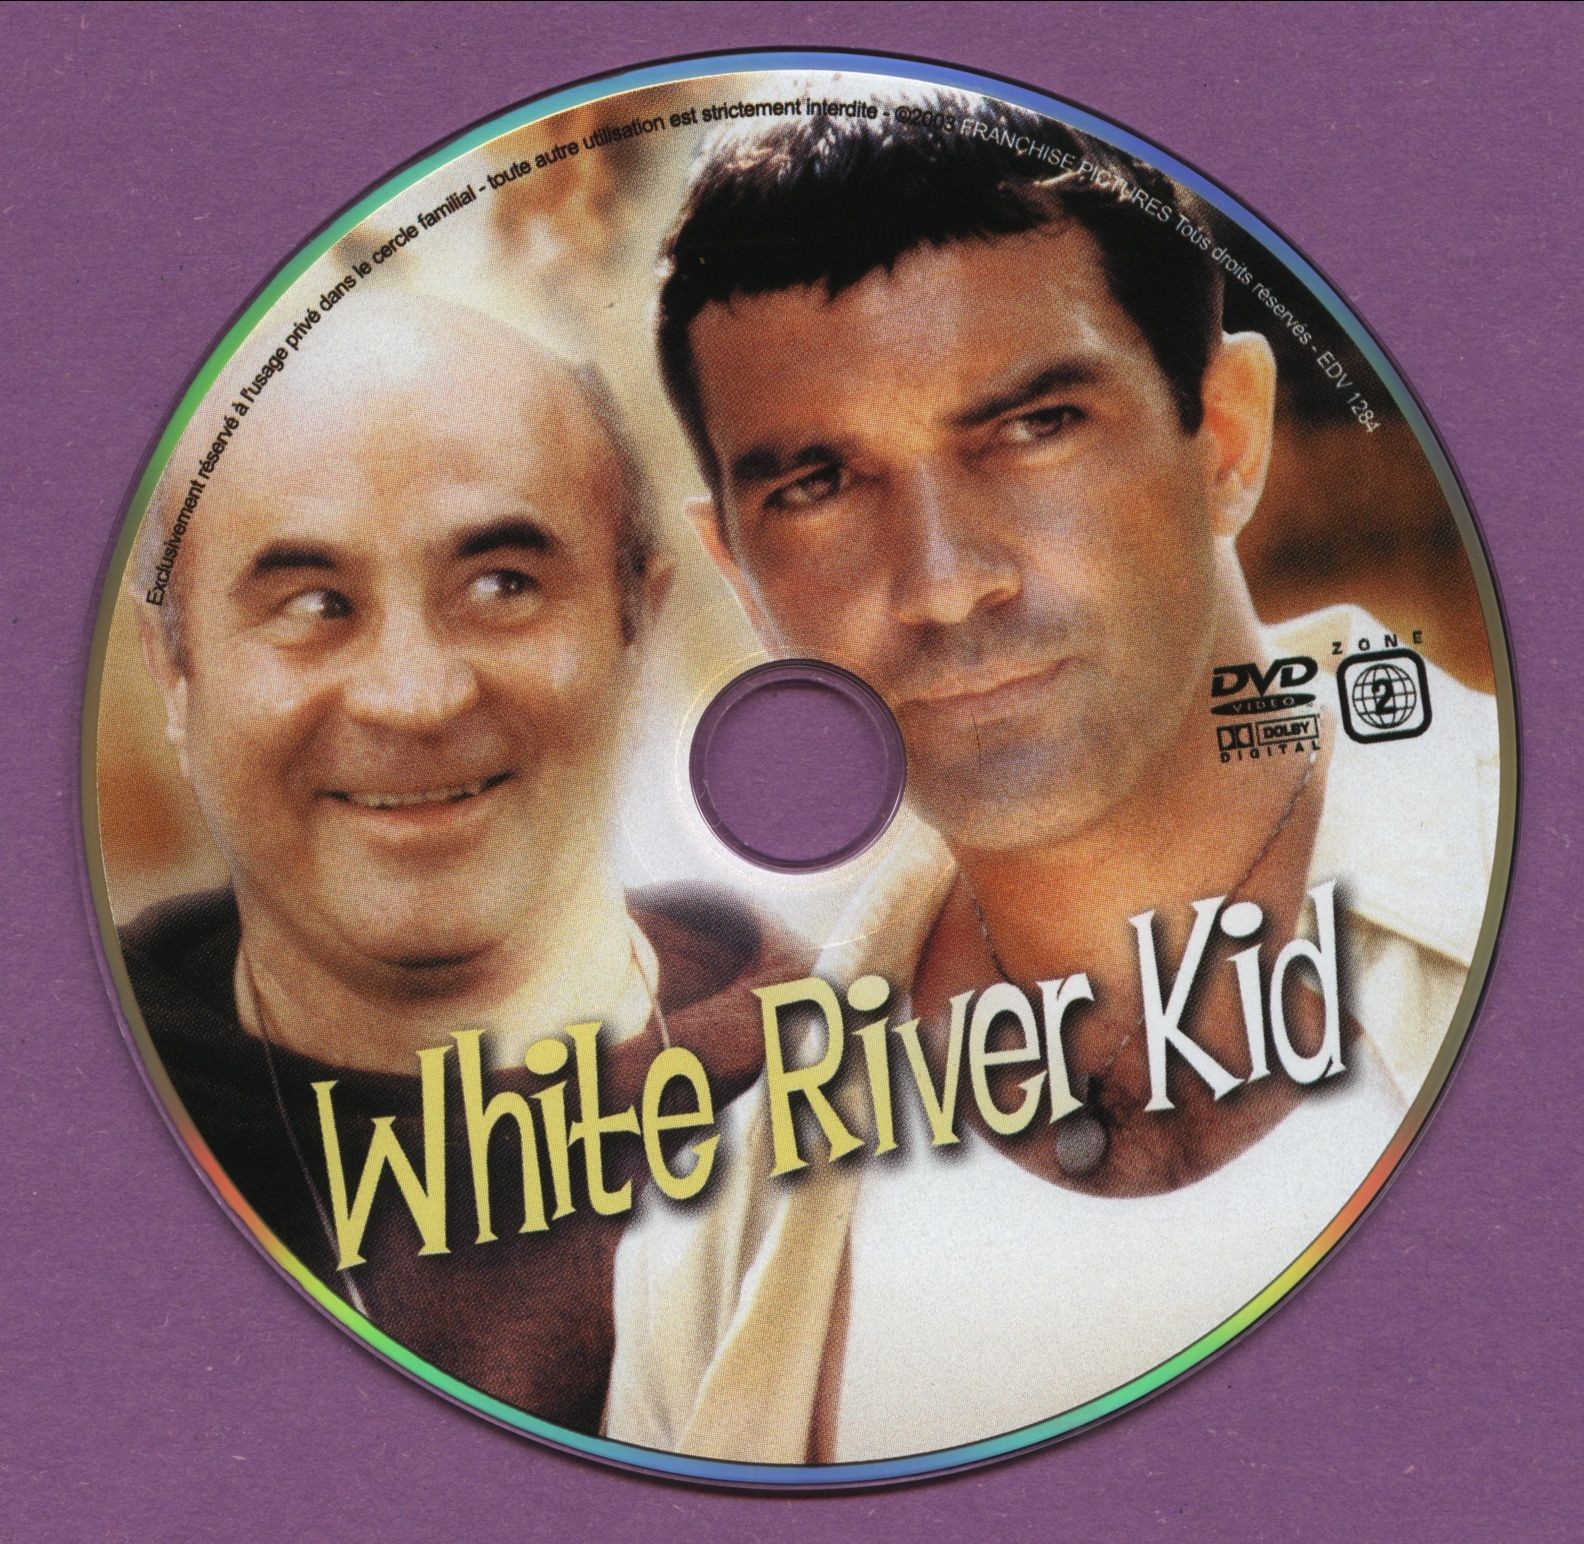 White river kid